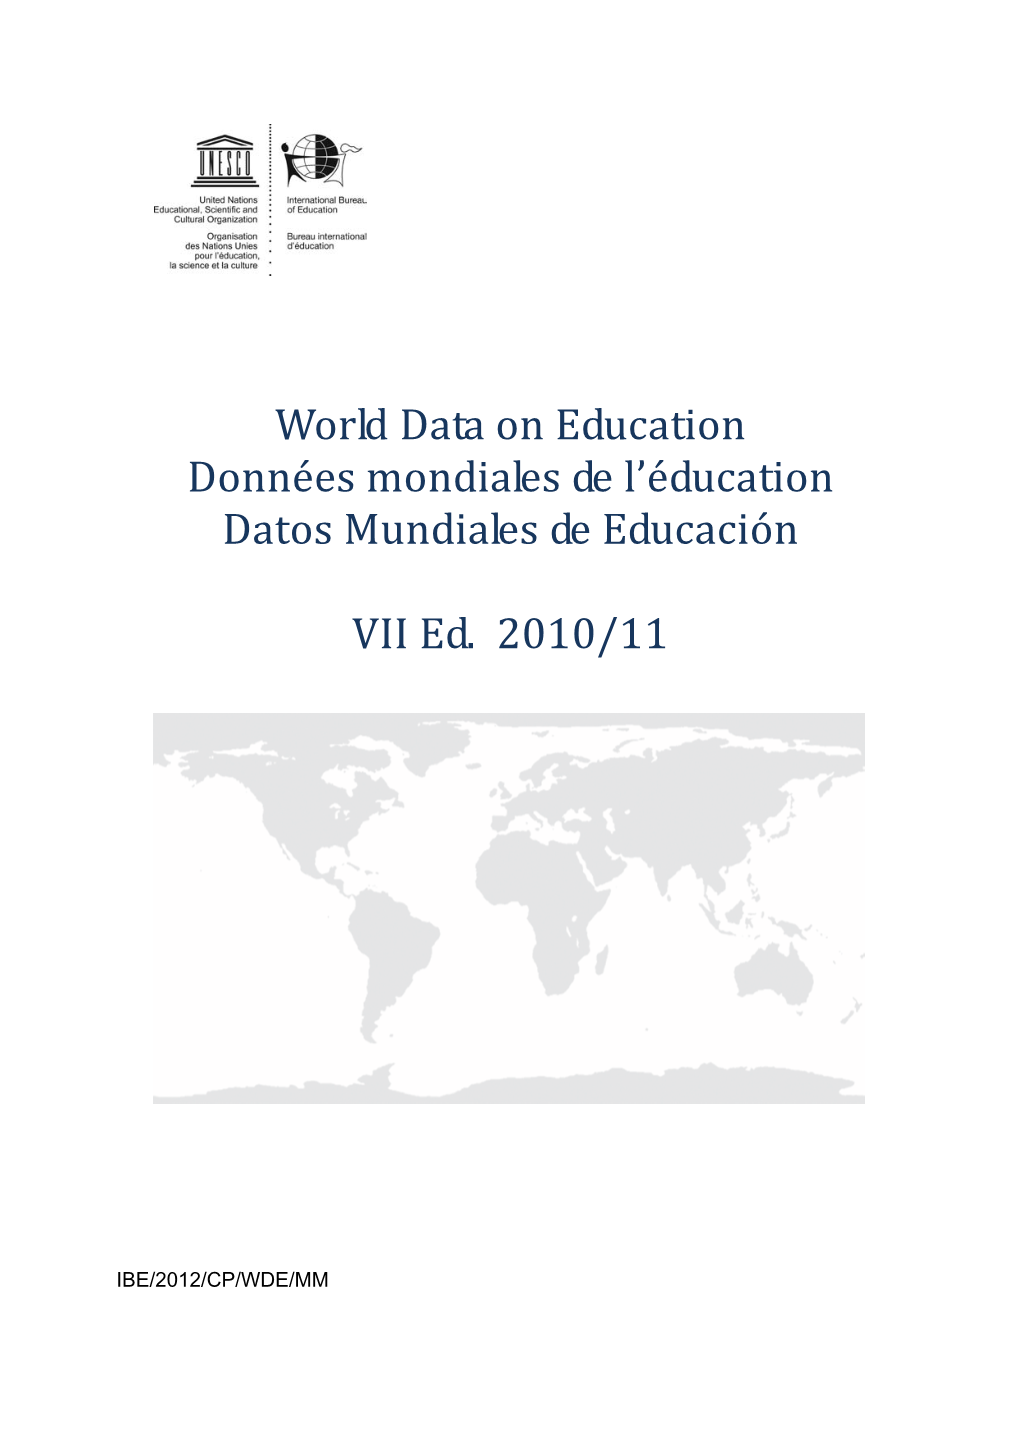 Malta; World Data on Education, 2010/11